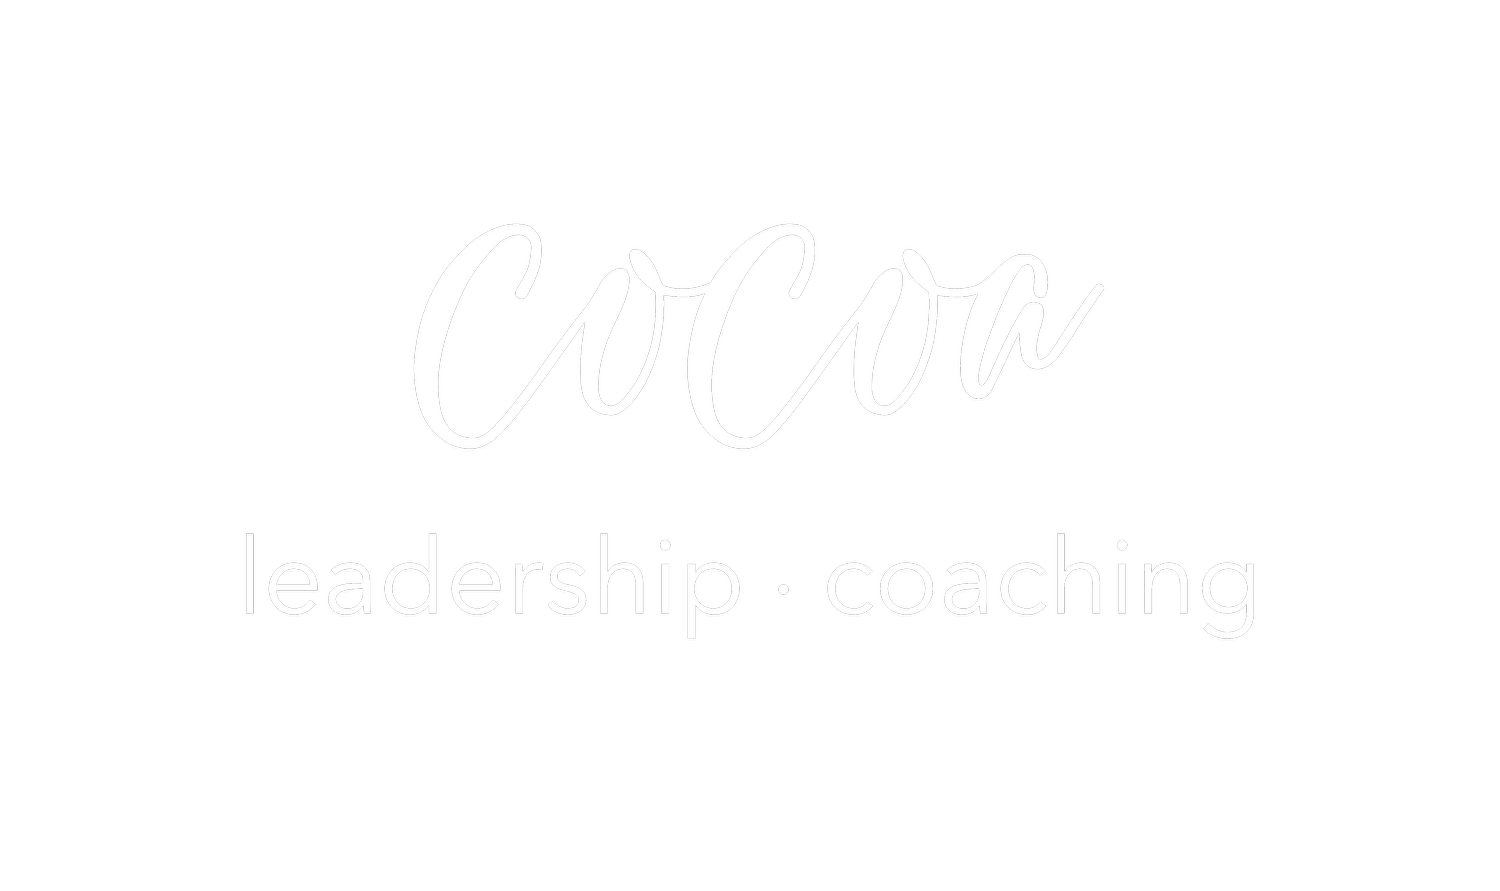 Cocoa Leadership, LLC